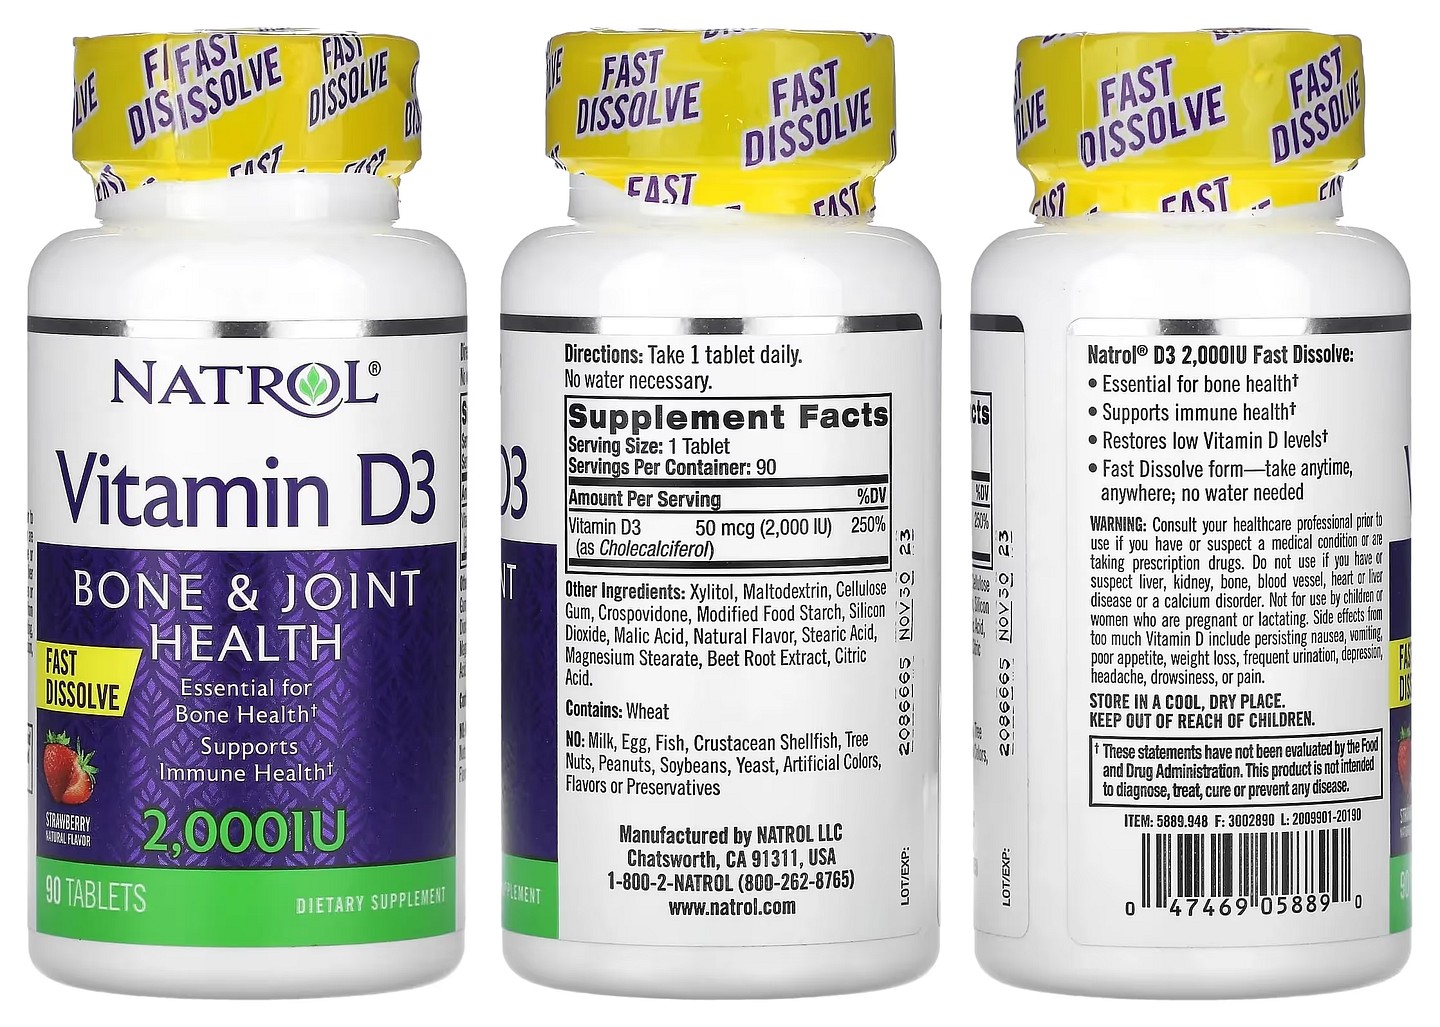 Natrol, Vitamin D3 packaging